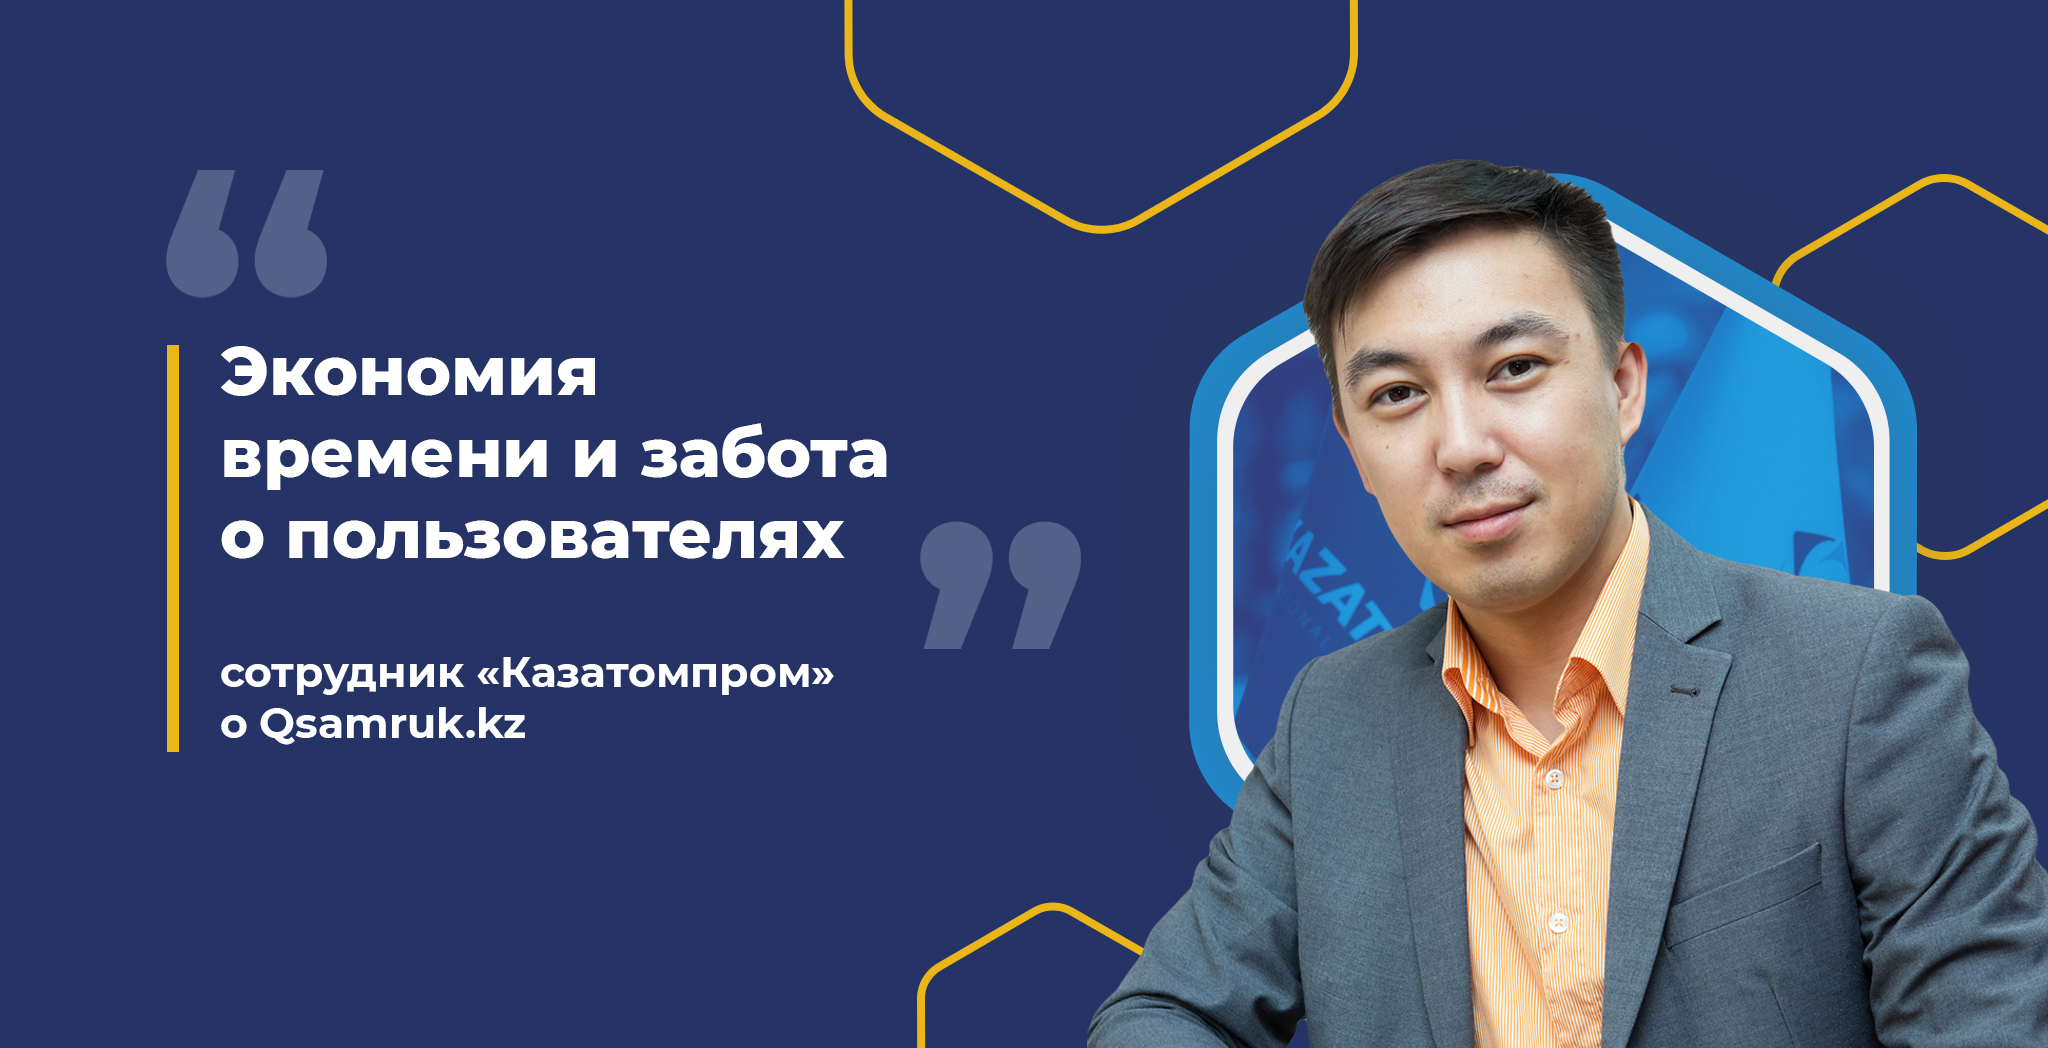 «Экономия времени и забота о пользователях» - сотрудник «Казатомпром» о Qsamruk.kz 